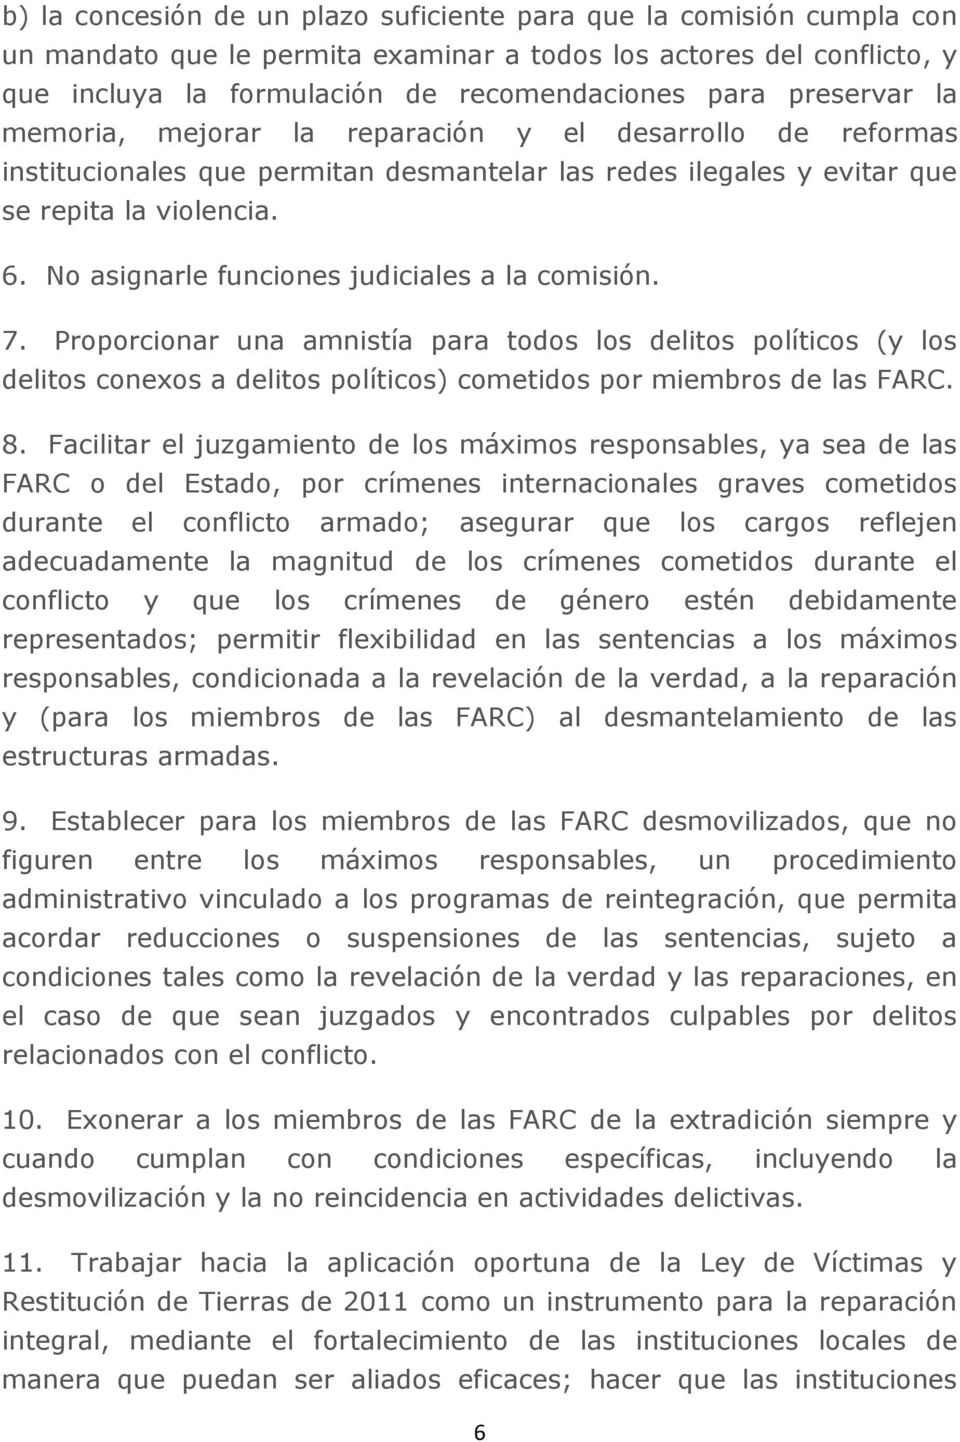 No asignarle funciones judiciales a la comisión. 7. Proporcionar una amnistía para todos los delitos políticos (y los delitos conexos a delitos políticos) cometidos por miembros de las FARC. 8.